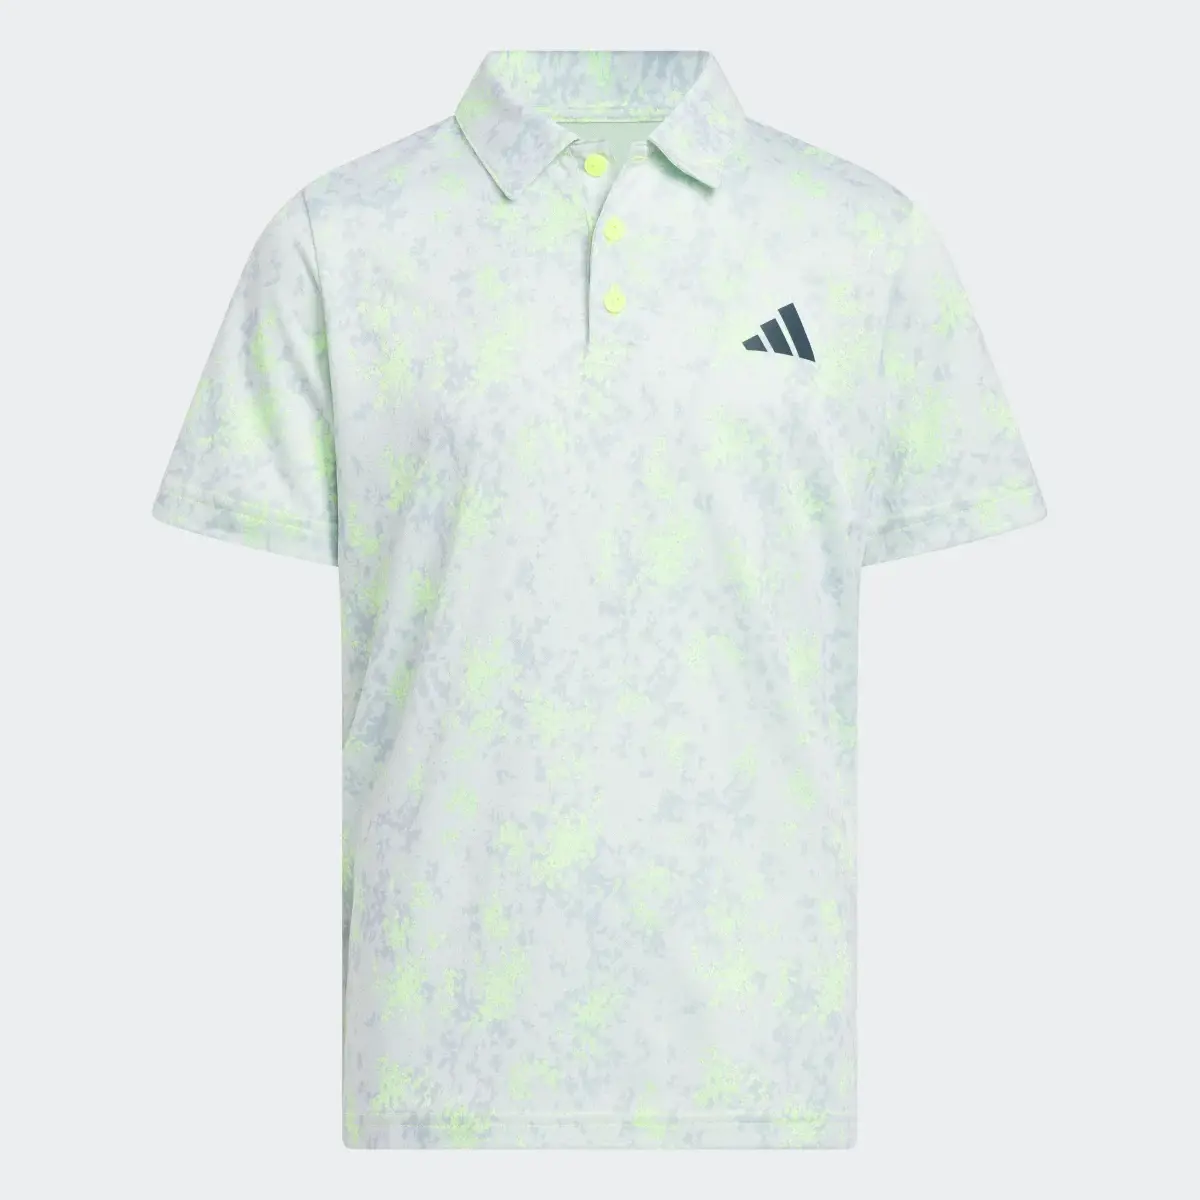 Adidas Ultimate Poloshirt. 1